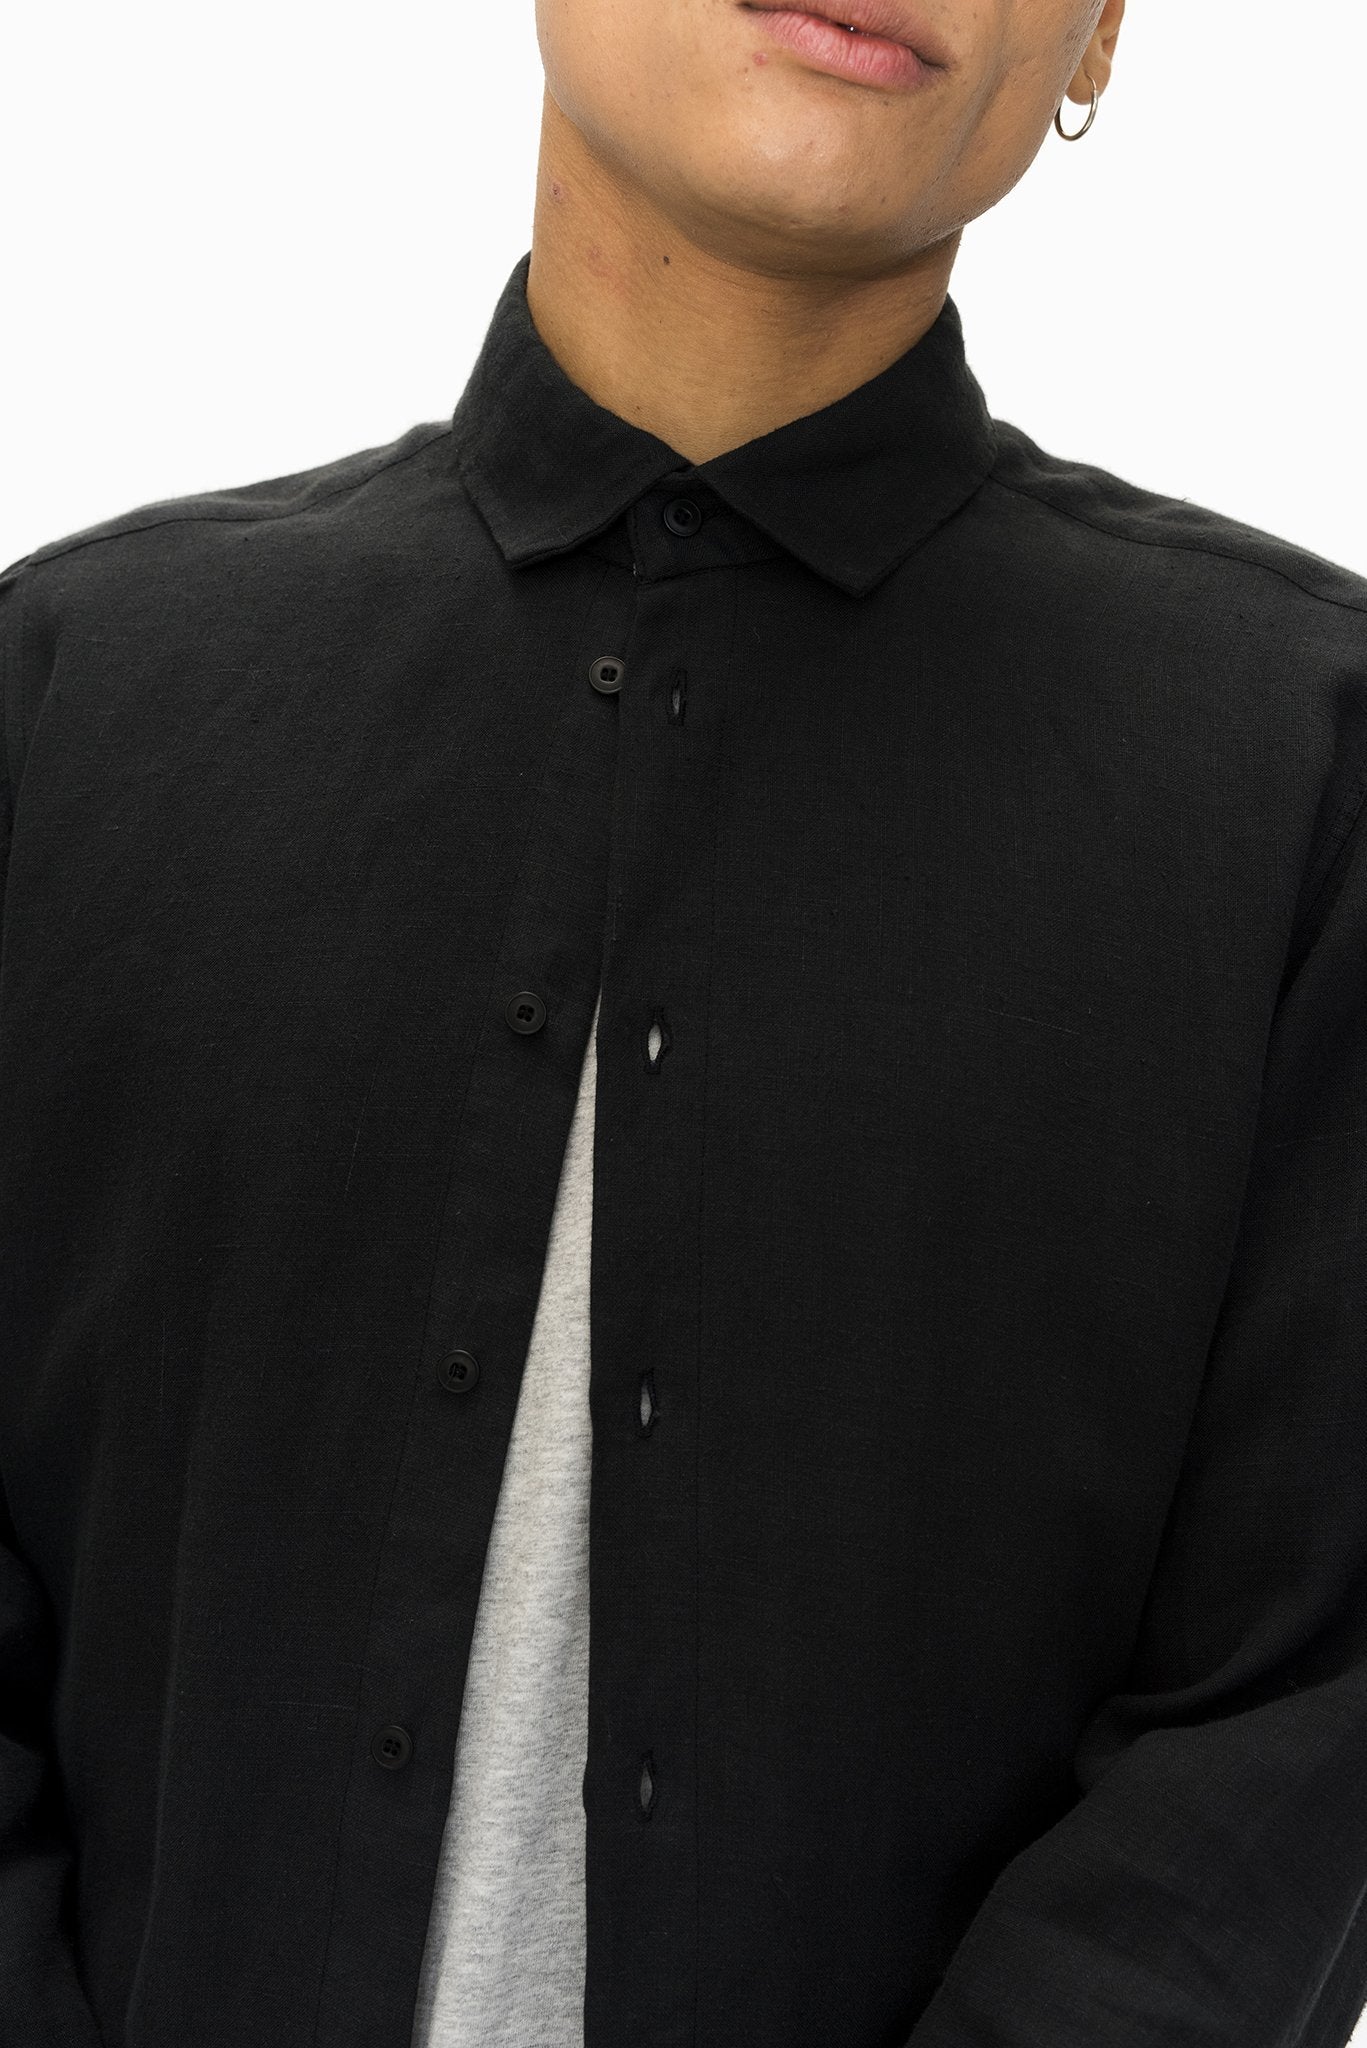 A.BCH A.04 Black Long Sleeve Button Up Shirt in Organic Linen